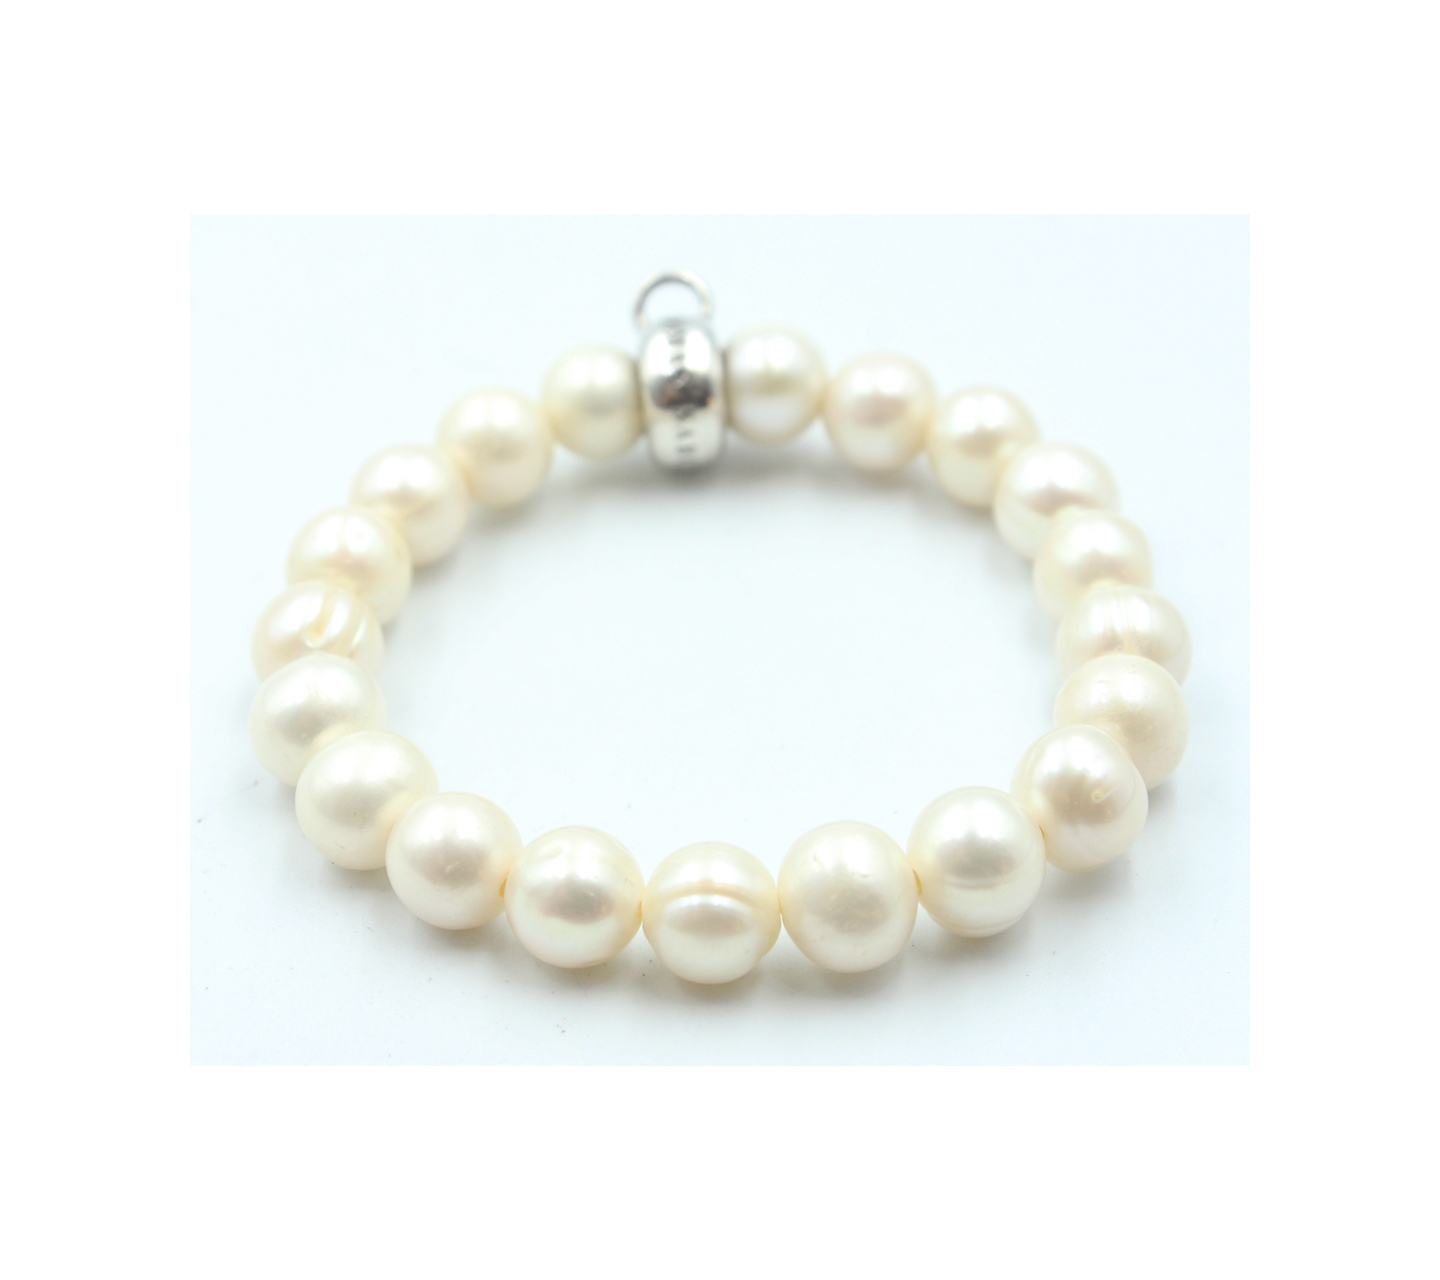 Thomas Sabo Off White Pearl Bracelet Jewelry